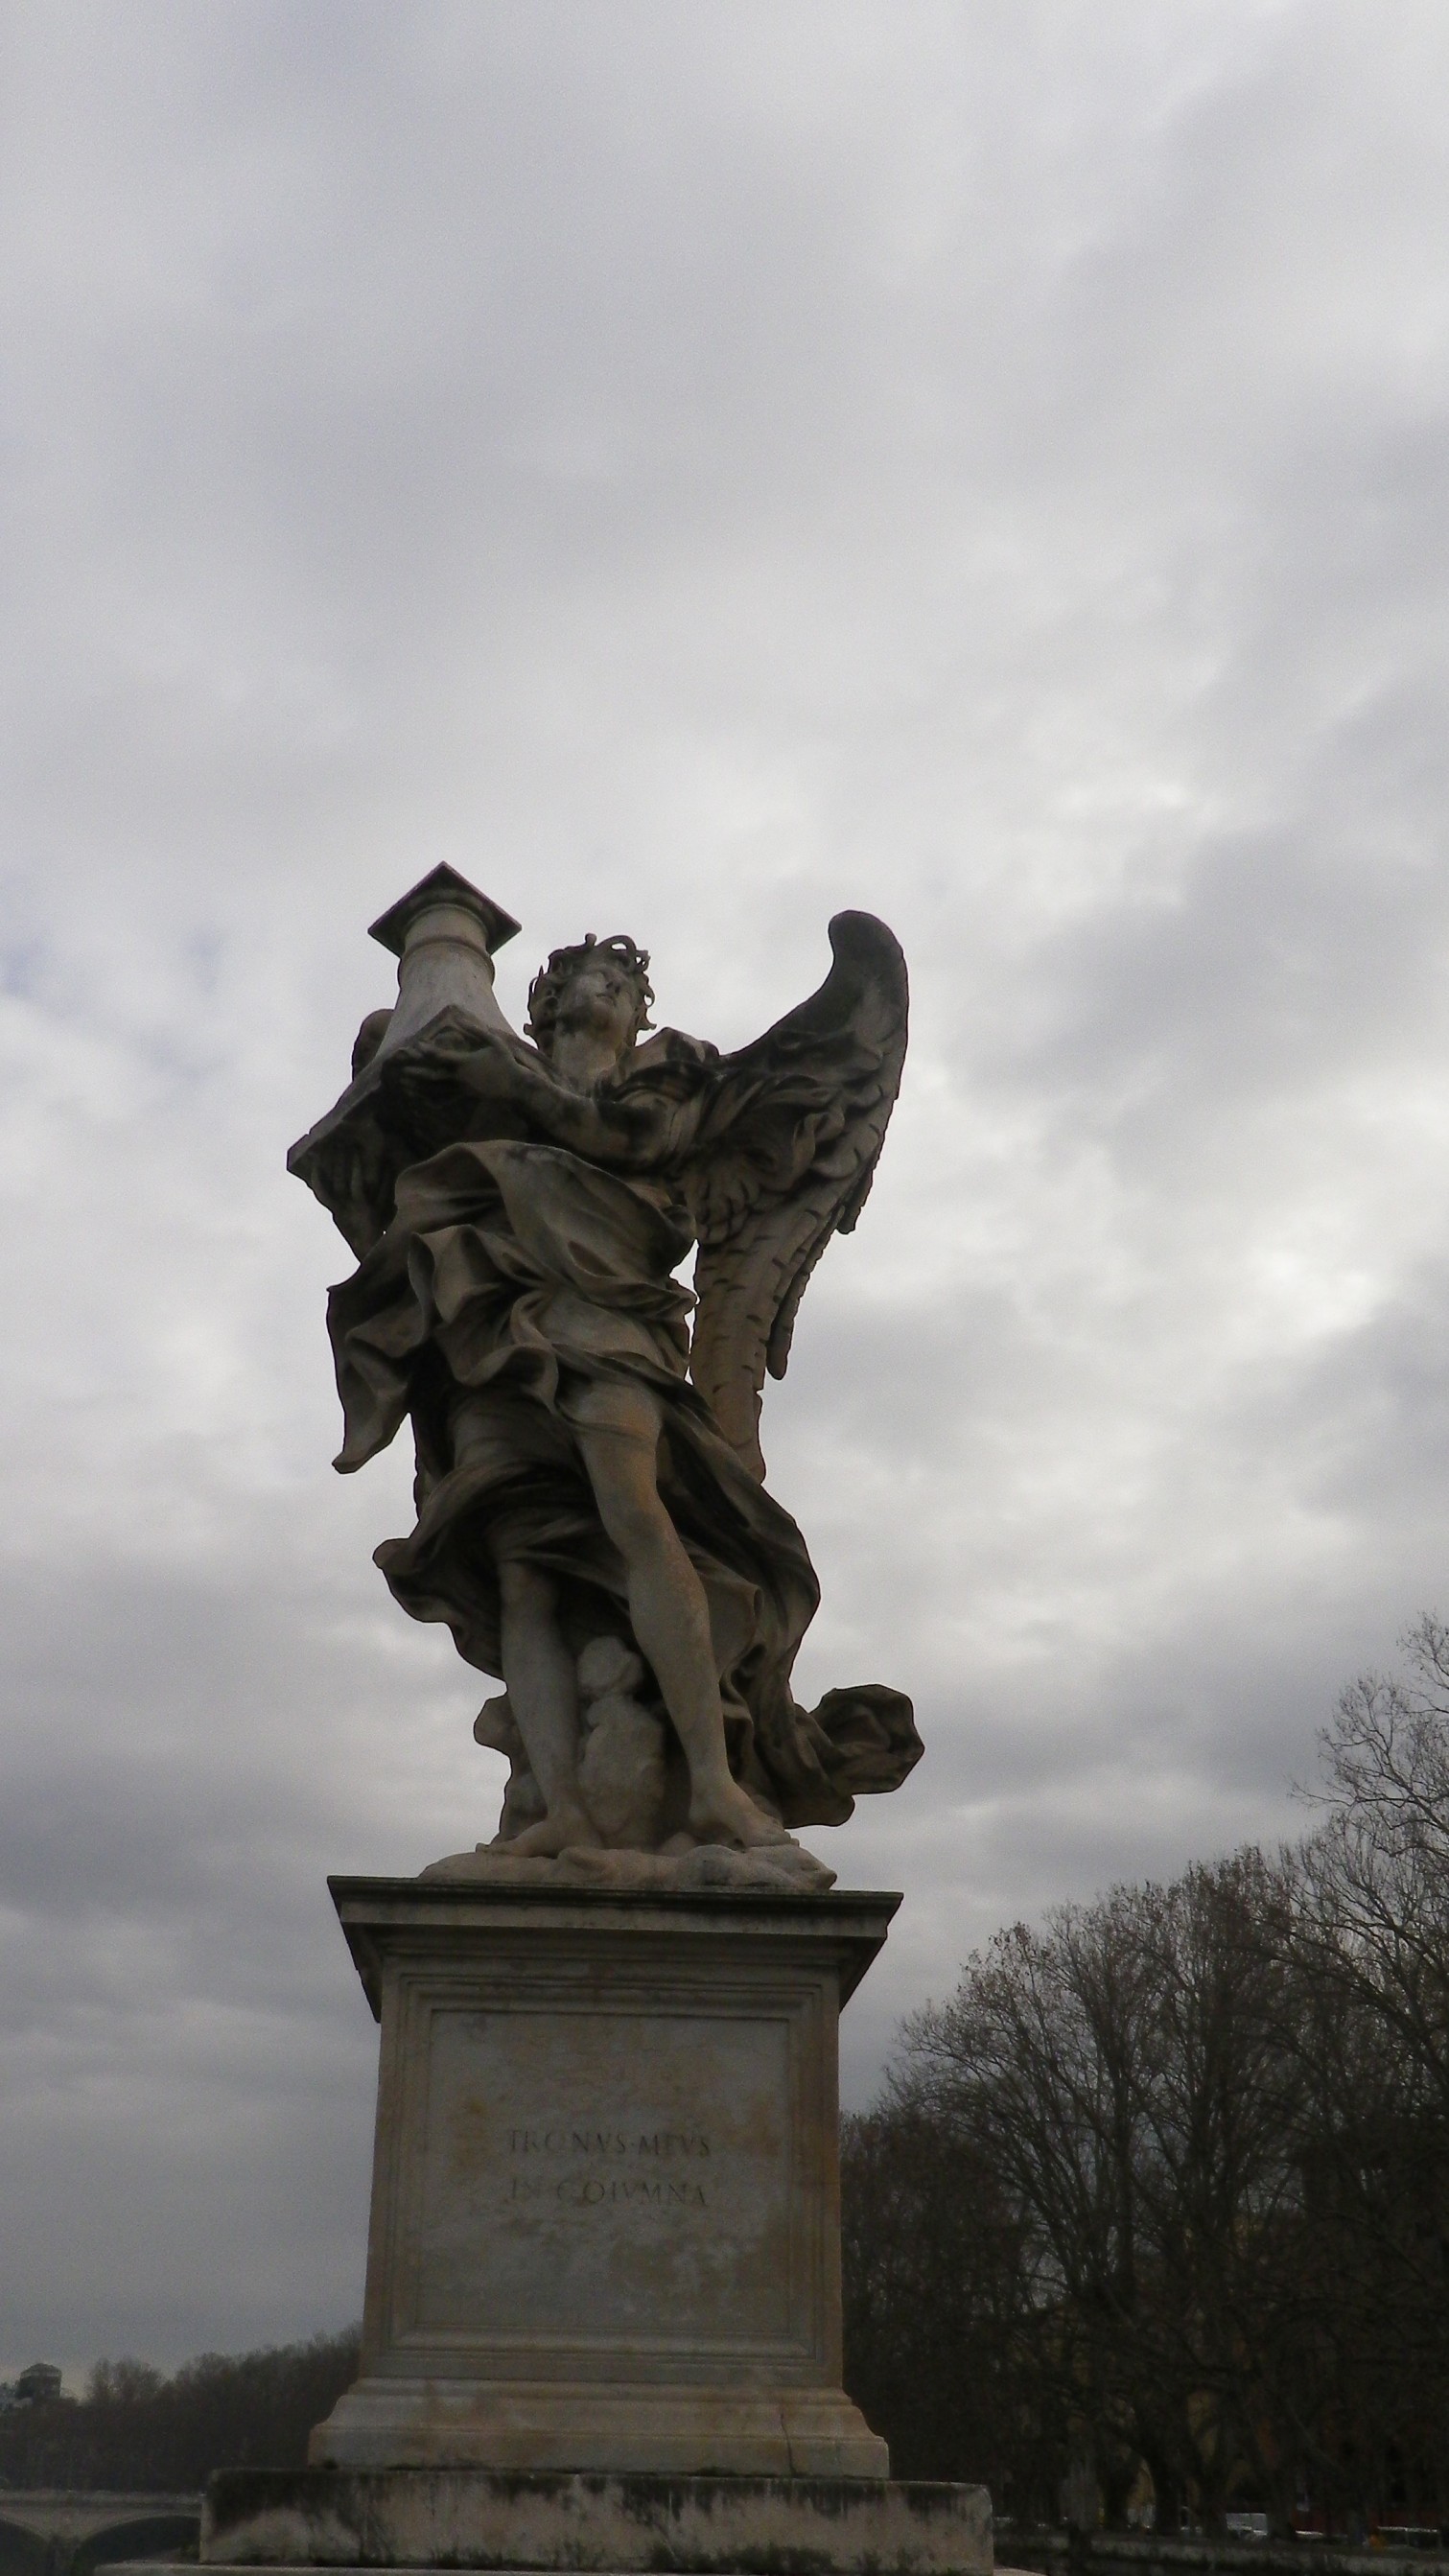 Ángel con la columna (Antonio Beams, inscripción "Tronus meus in columna").